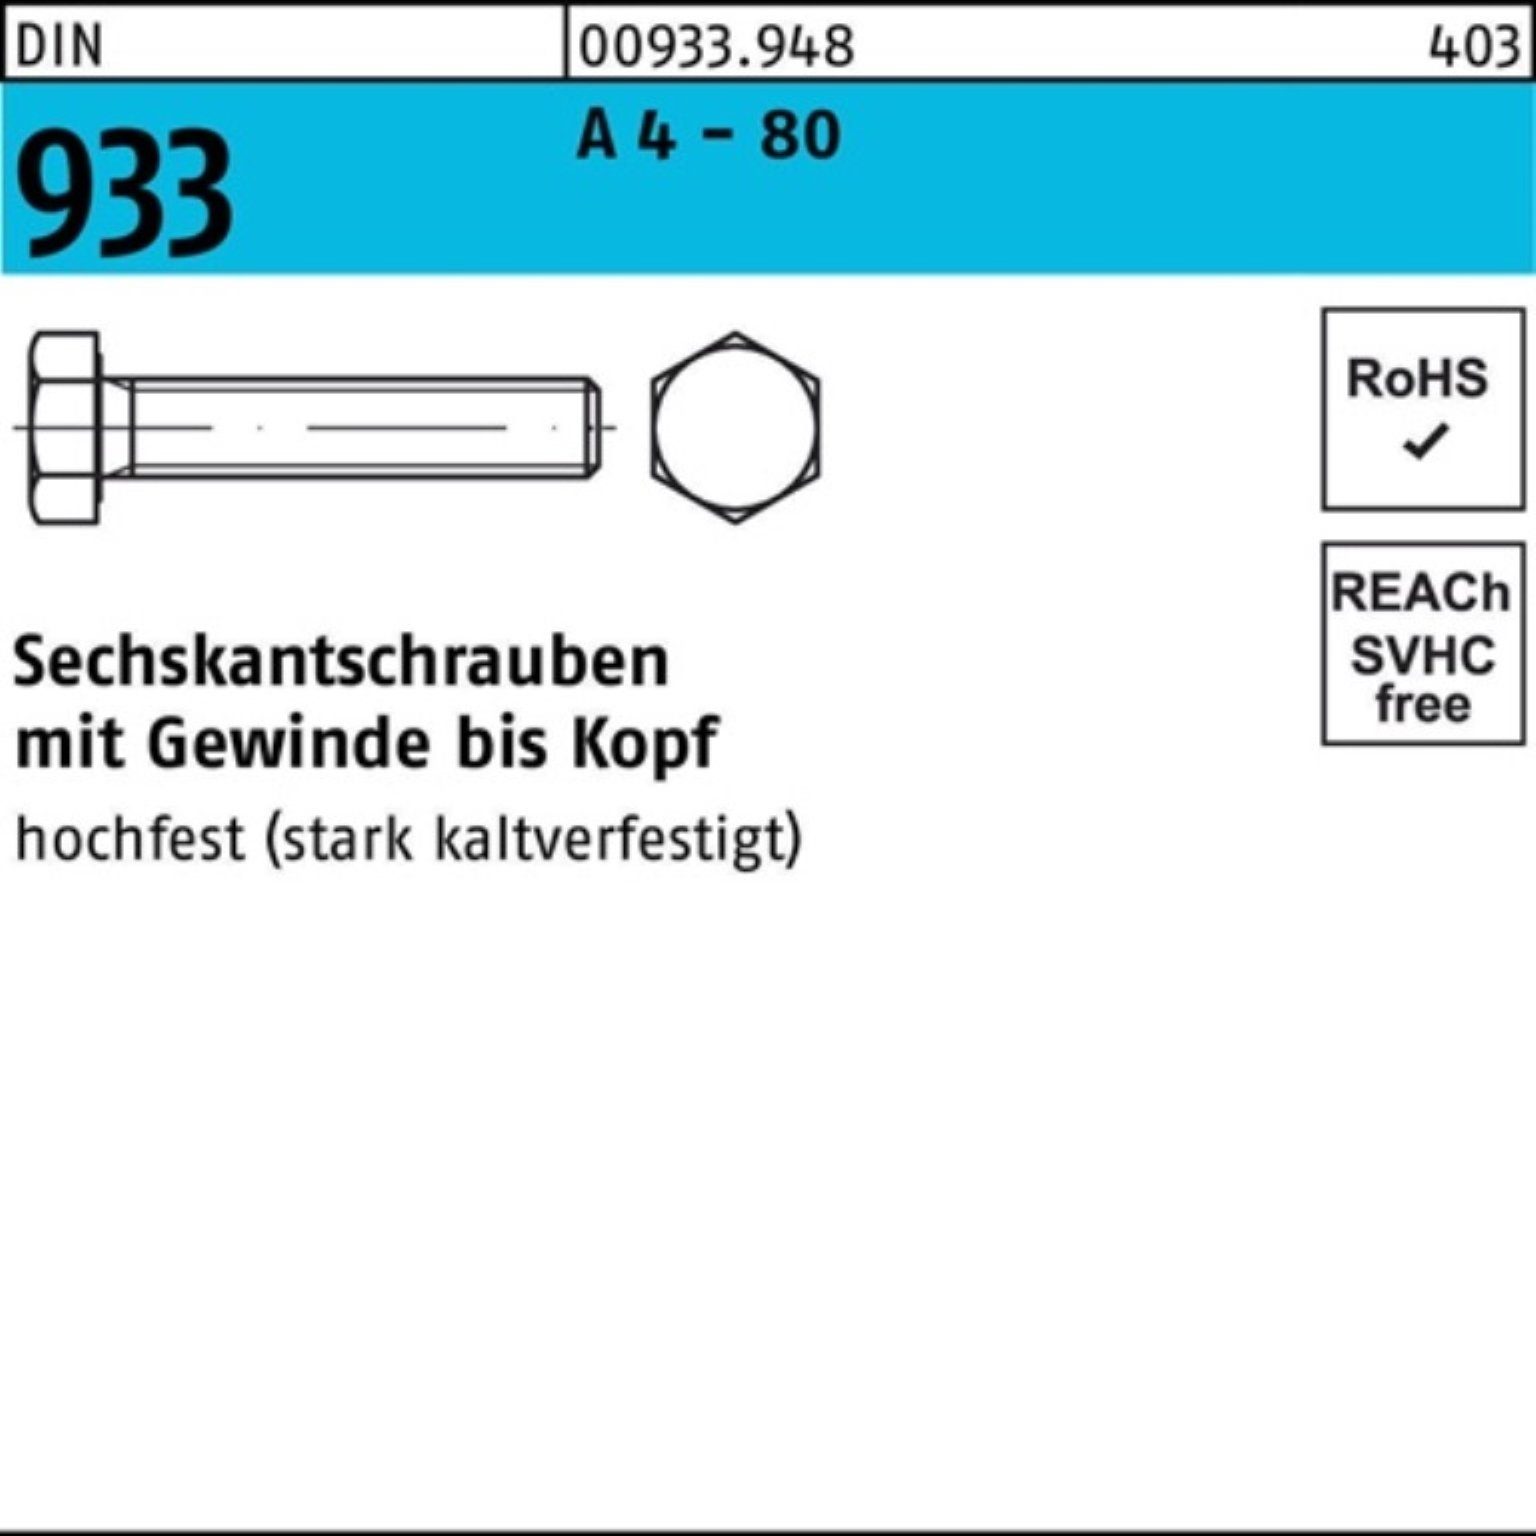 Reyher Sechskantschraube 100er Pack Sechskantschraube DIN 933 VG M12x 30 A 4 - 80 100 Stück DI